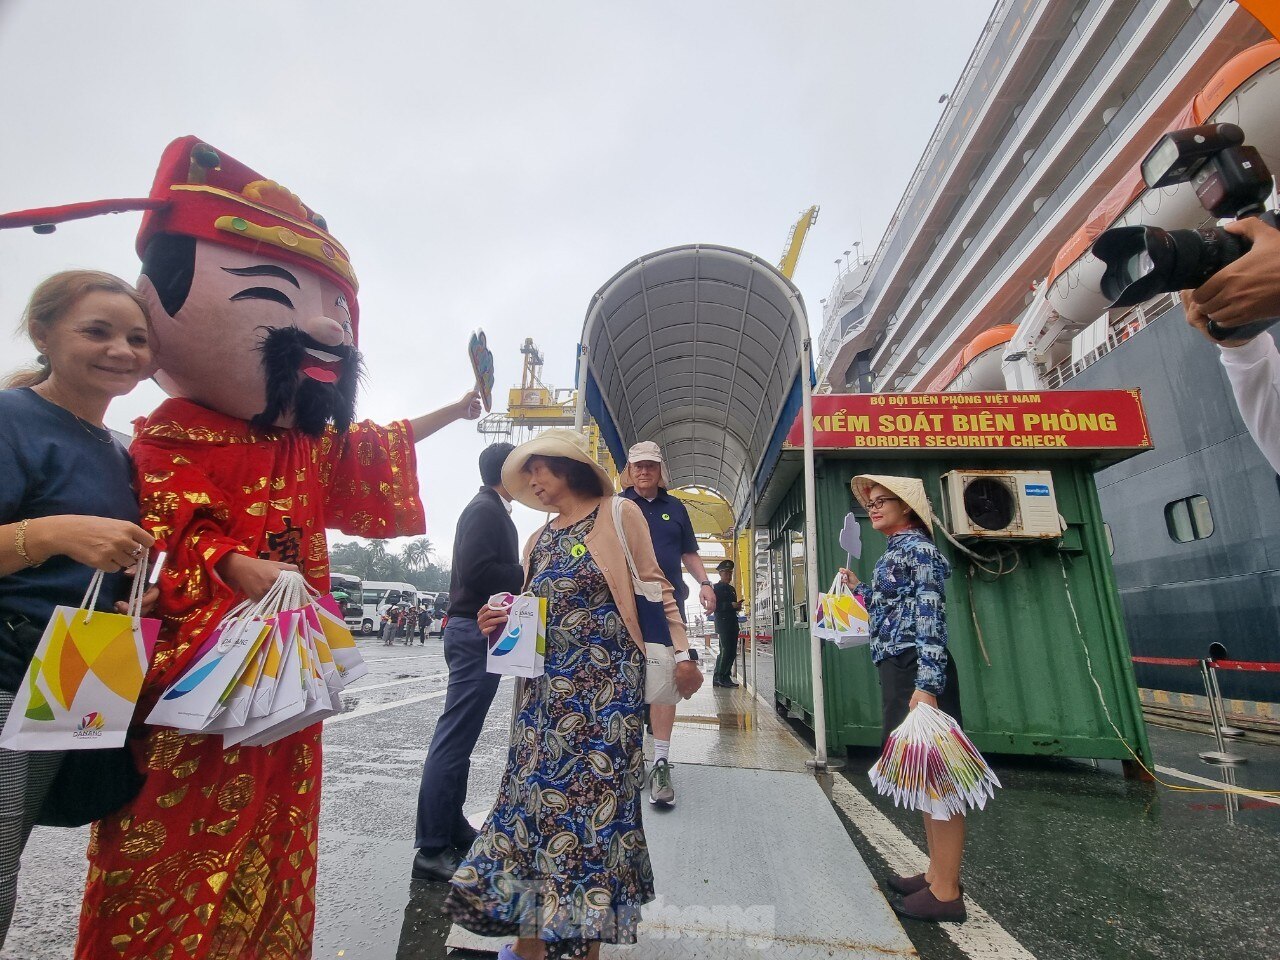 Cận cảnh du thuyền 5 sao đưa 2.000 khách quốc tế đến Đà Nẵng đầu năm mới ảnh 4